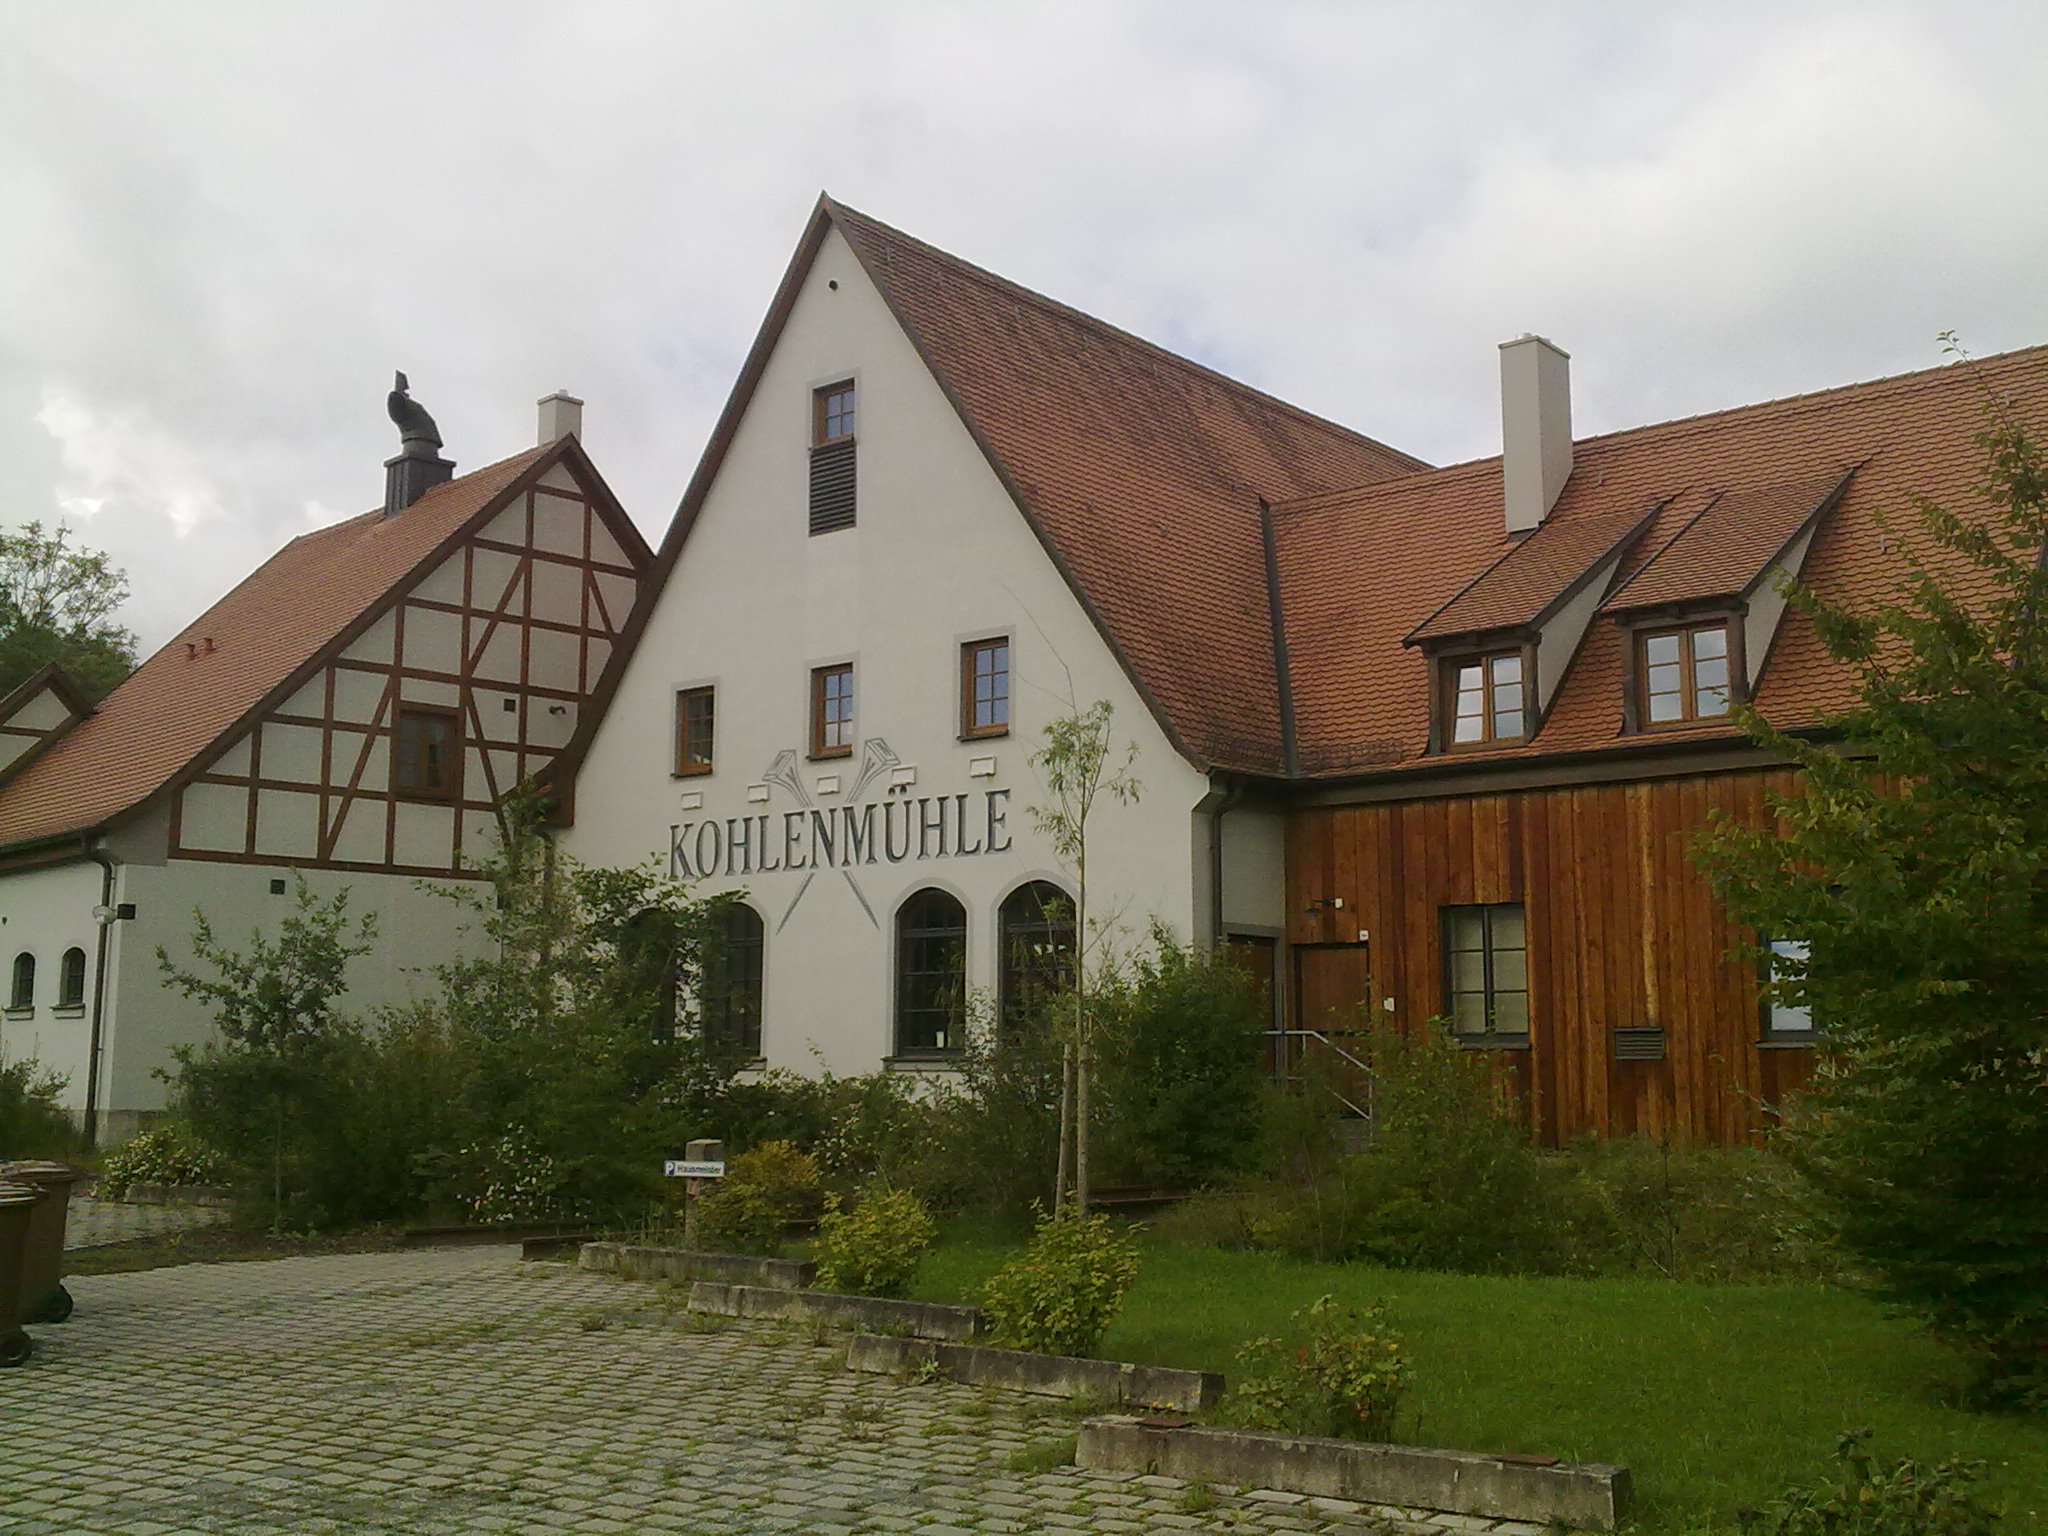 Kohlenmühle in Neustadt a.d. Aisch